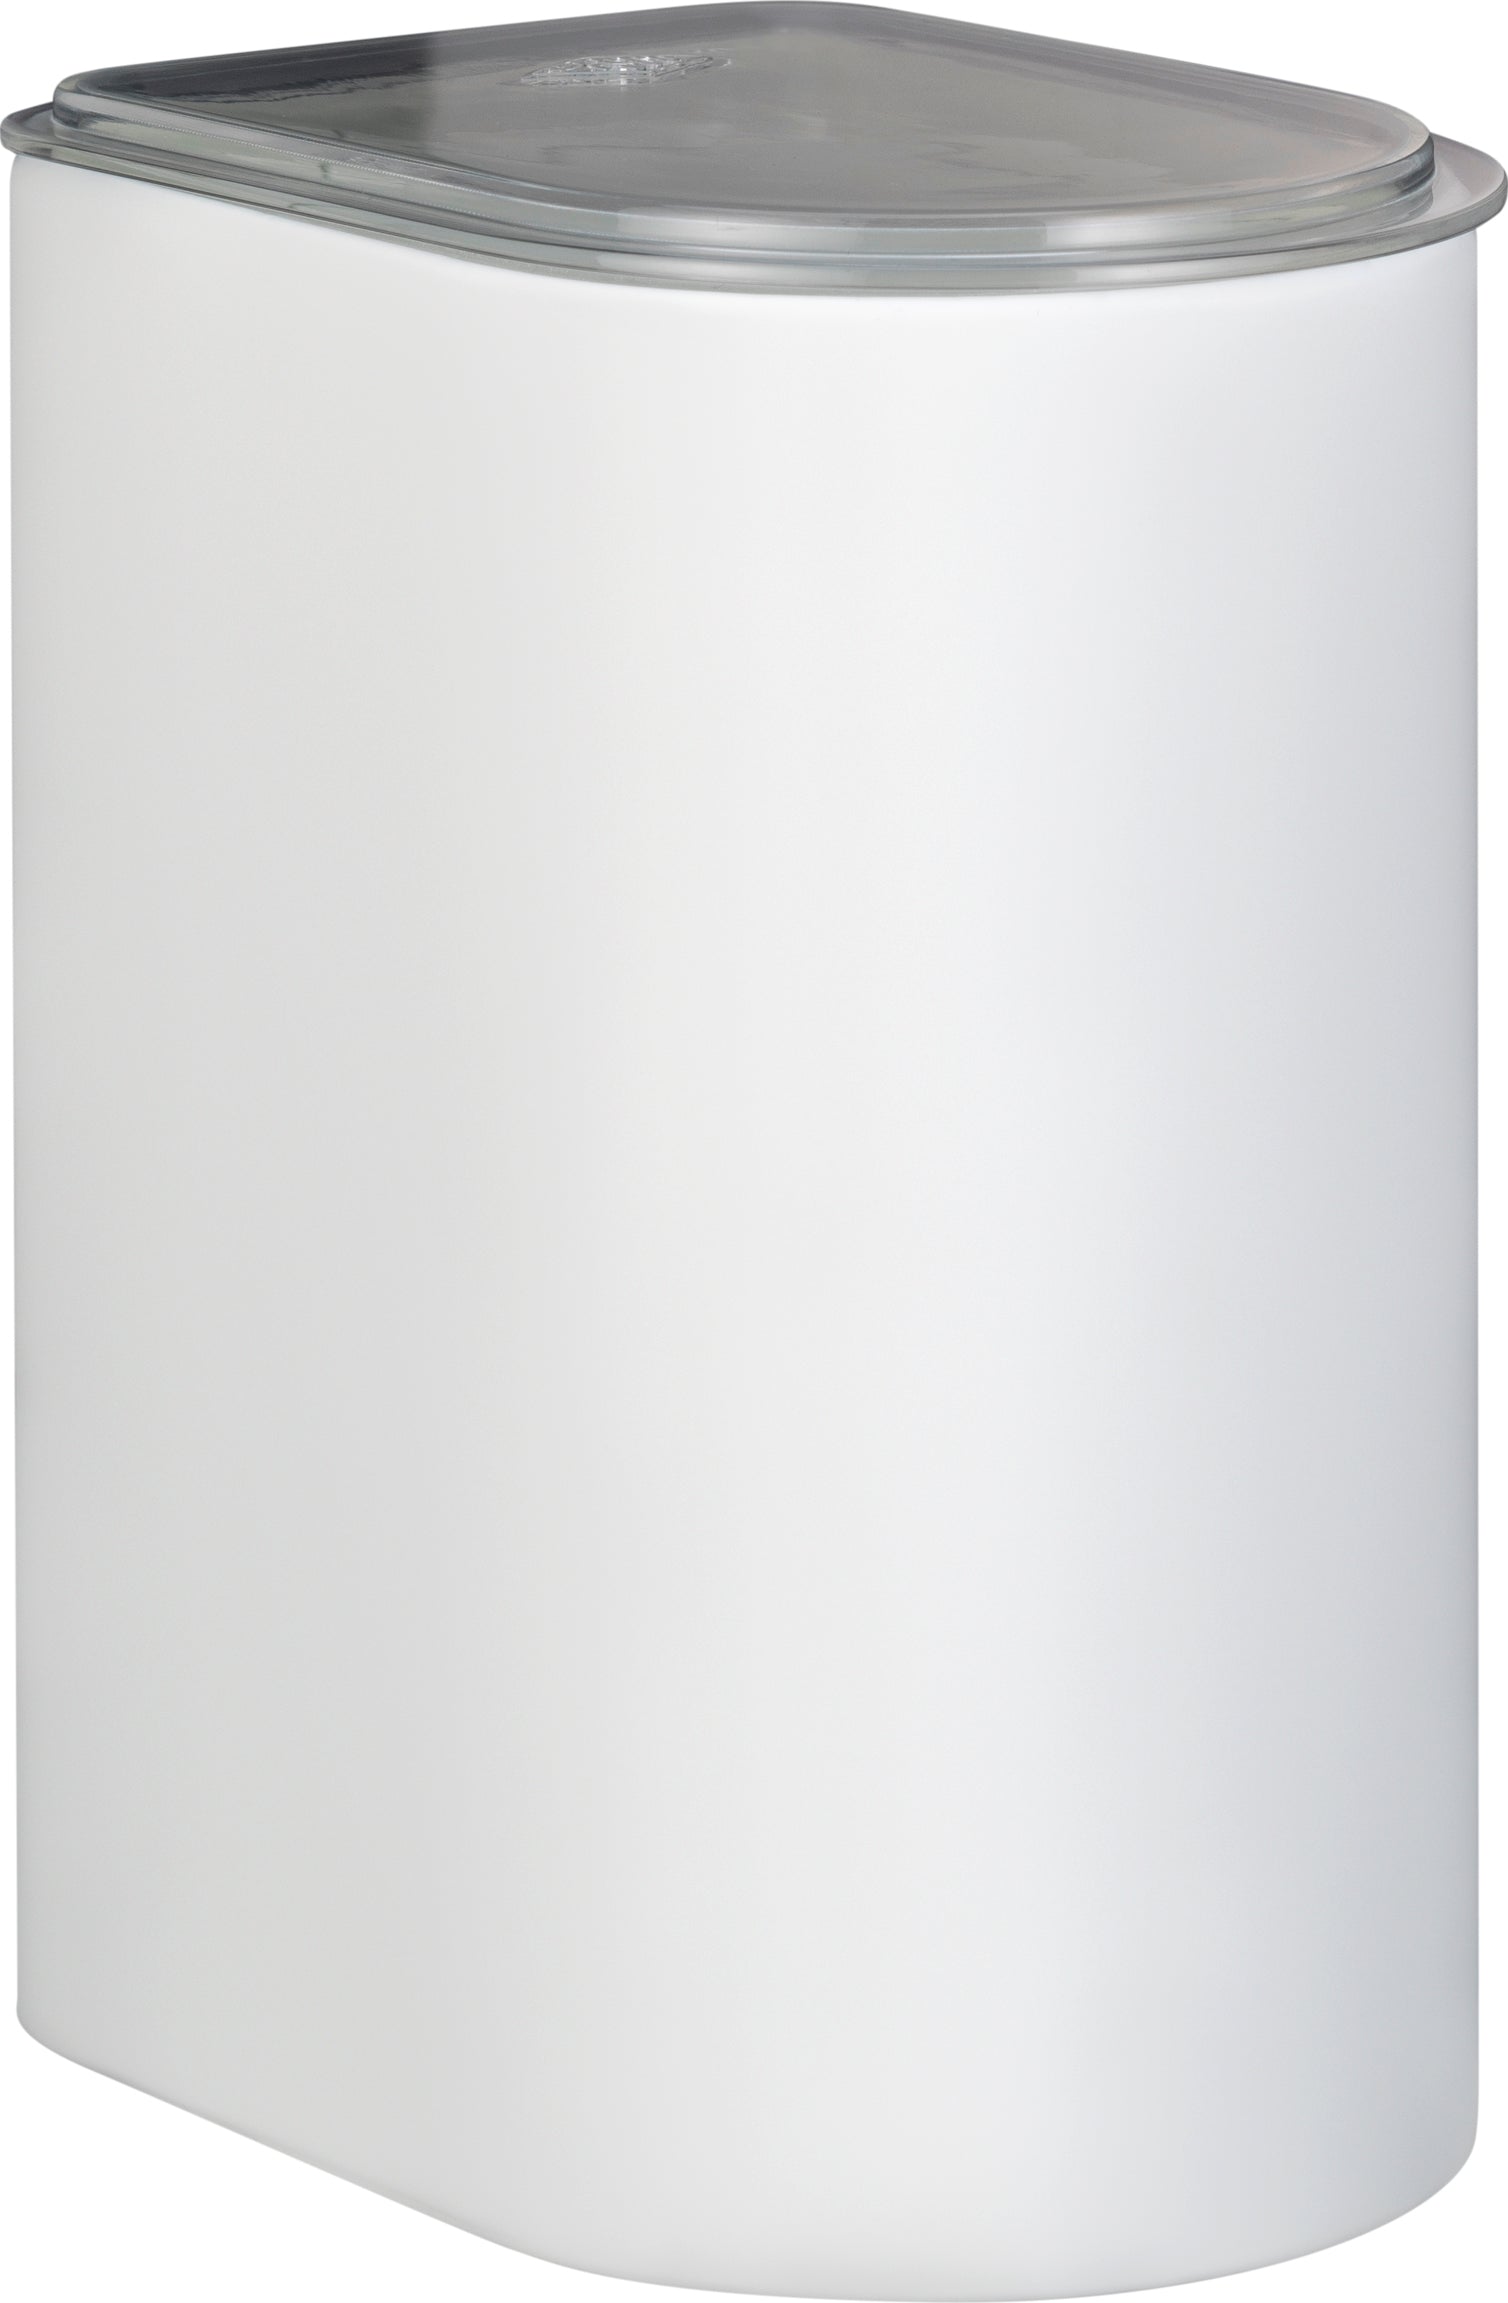 Wesco Bande de cartouche avec couvercle acrylique, Matt blanc